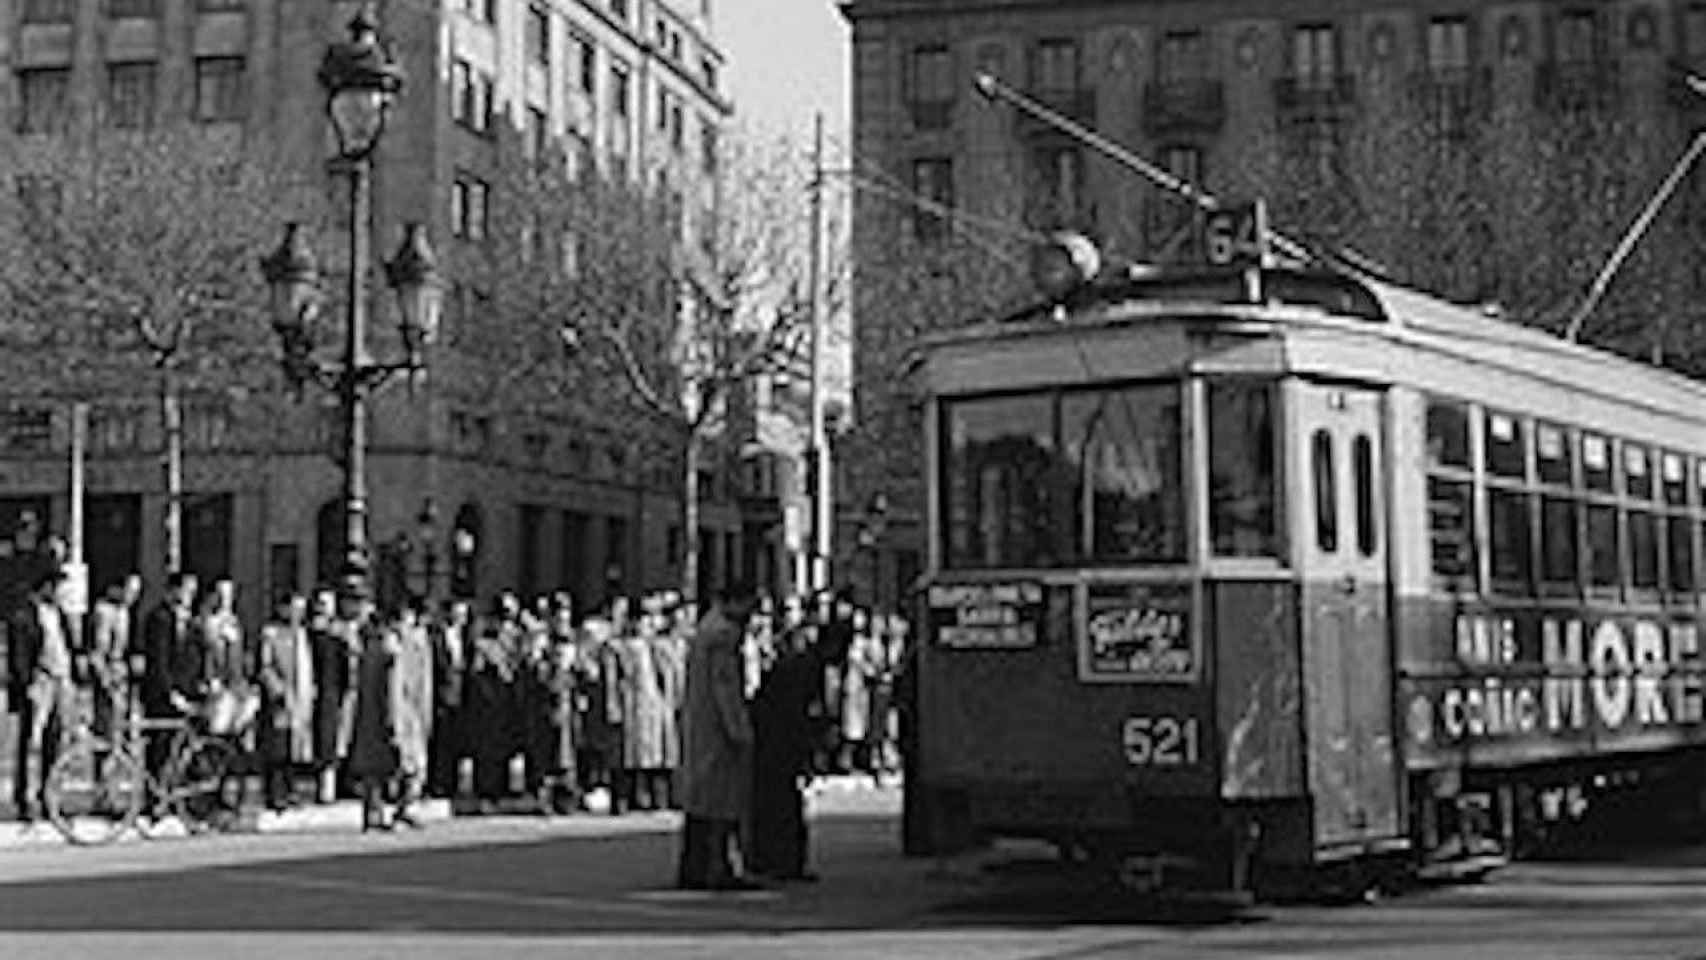 Ciudadanos junto a un tranvía en 1951 / WIKIPEDIA